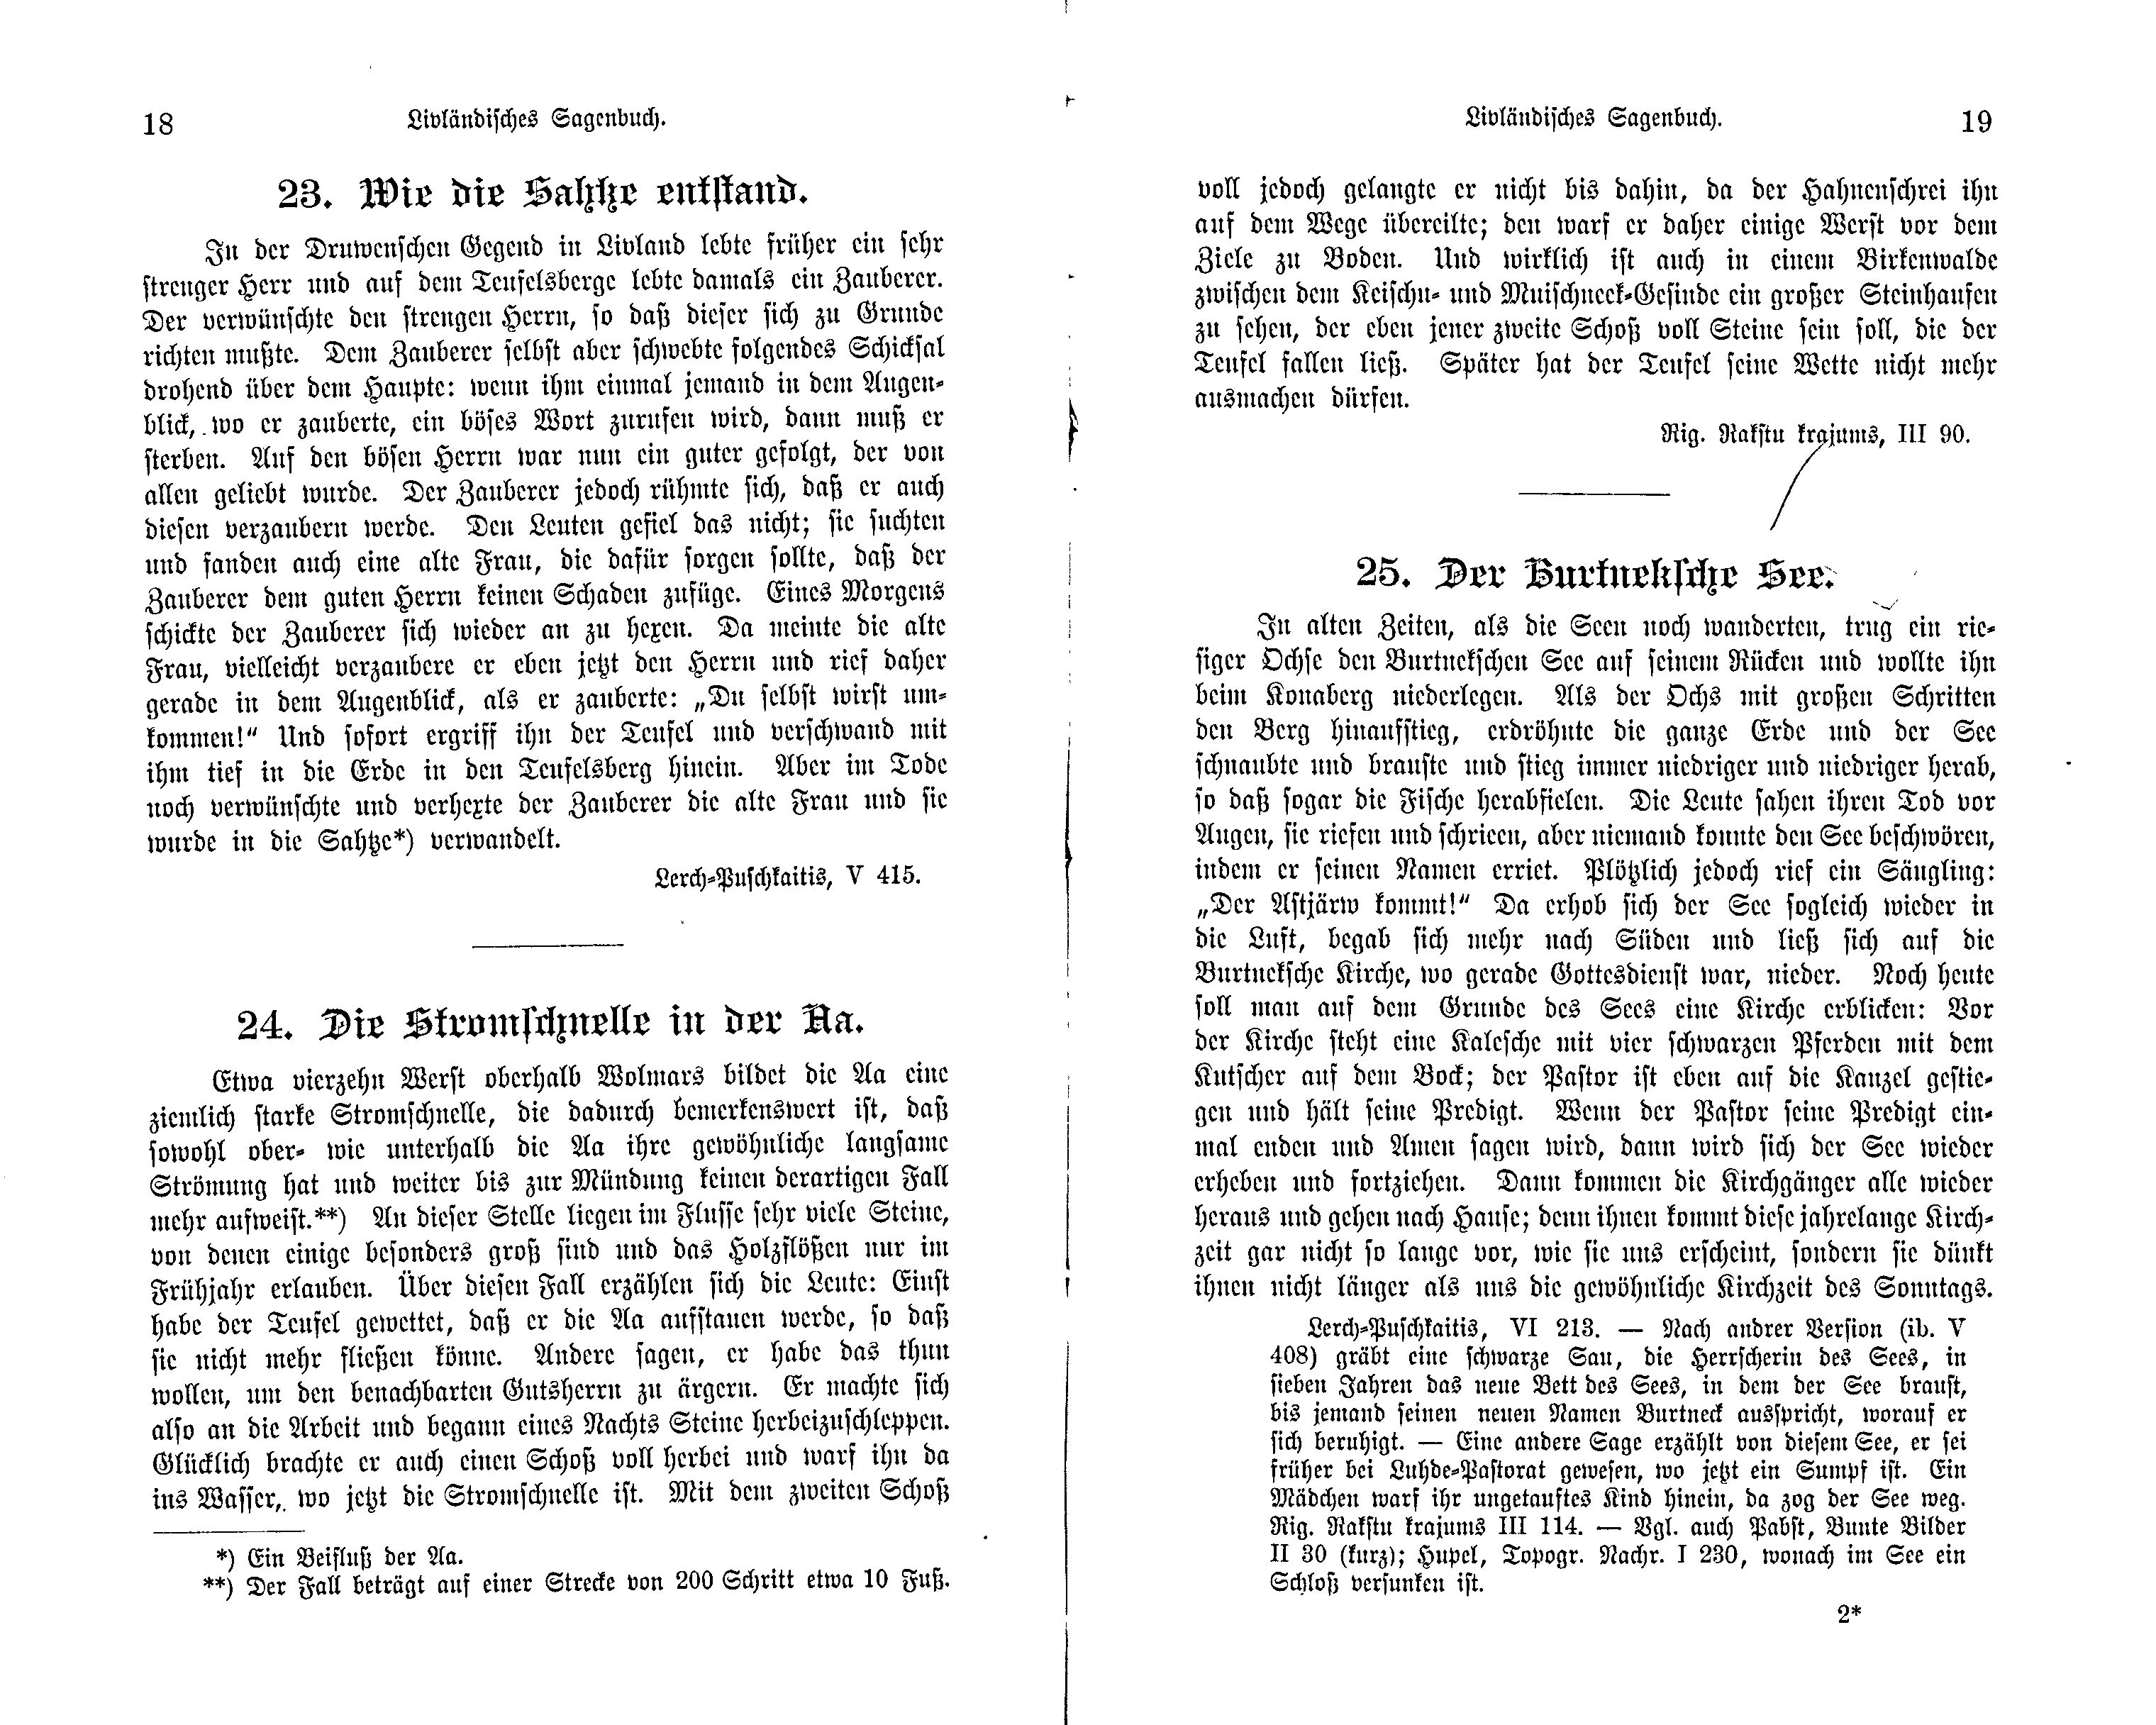 Die Stromschnelle in der Aa (1897) | 1. (18-19) Põhitekst